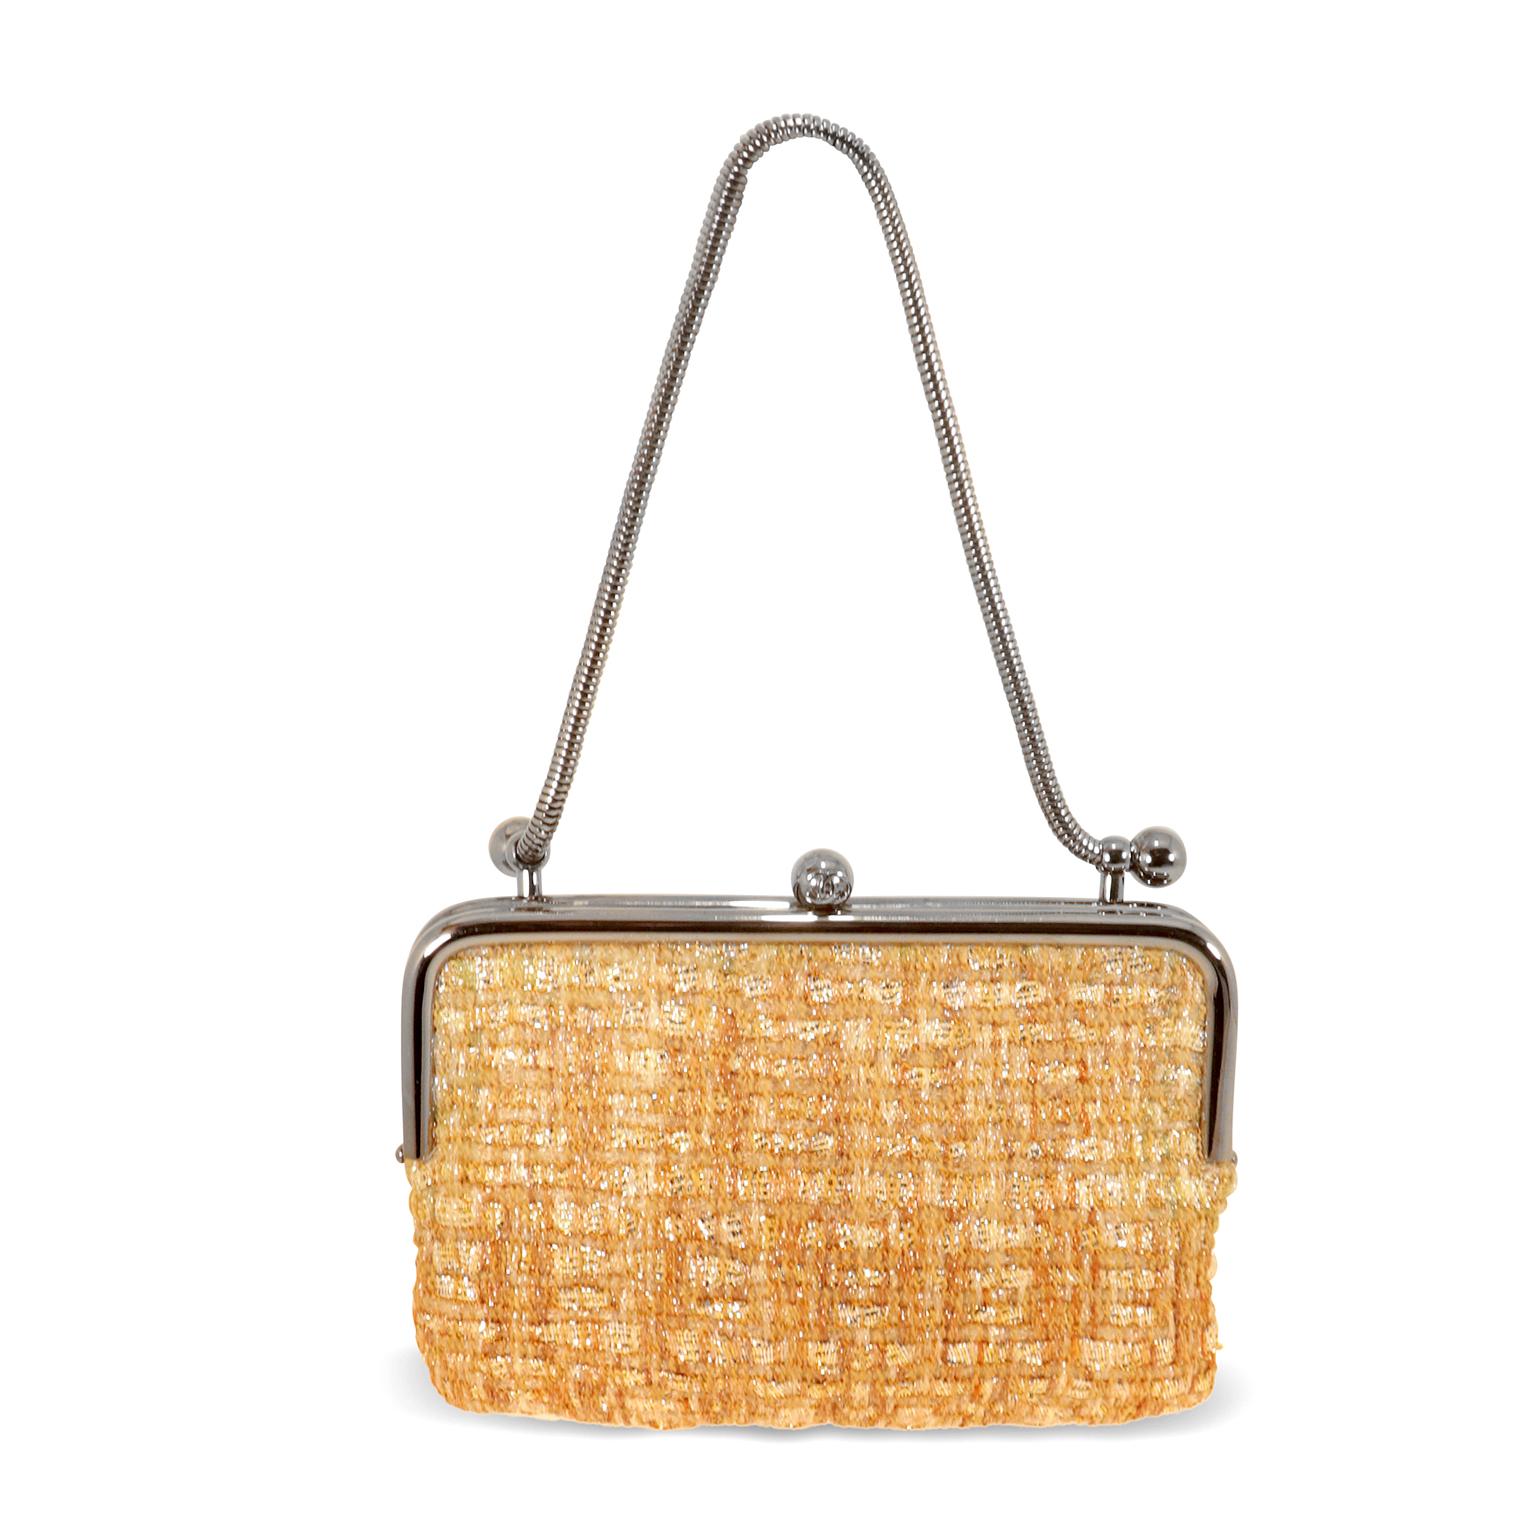 Cet authentique sac Chanel Gold Tweed Kiss Lock est en excellent état.  Petite et féminine, cette miniature est dotée d'une monture argentée et d'une fermeture à baiser.  La courte lanière en chaîne serpent argentée peut être portée à la main ou au